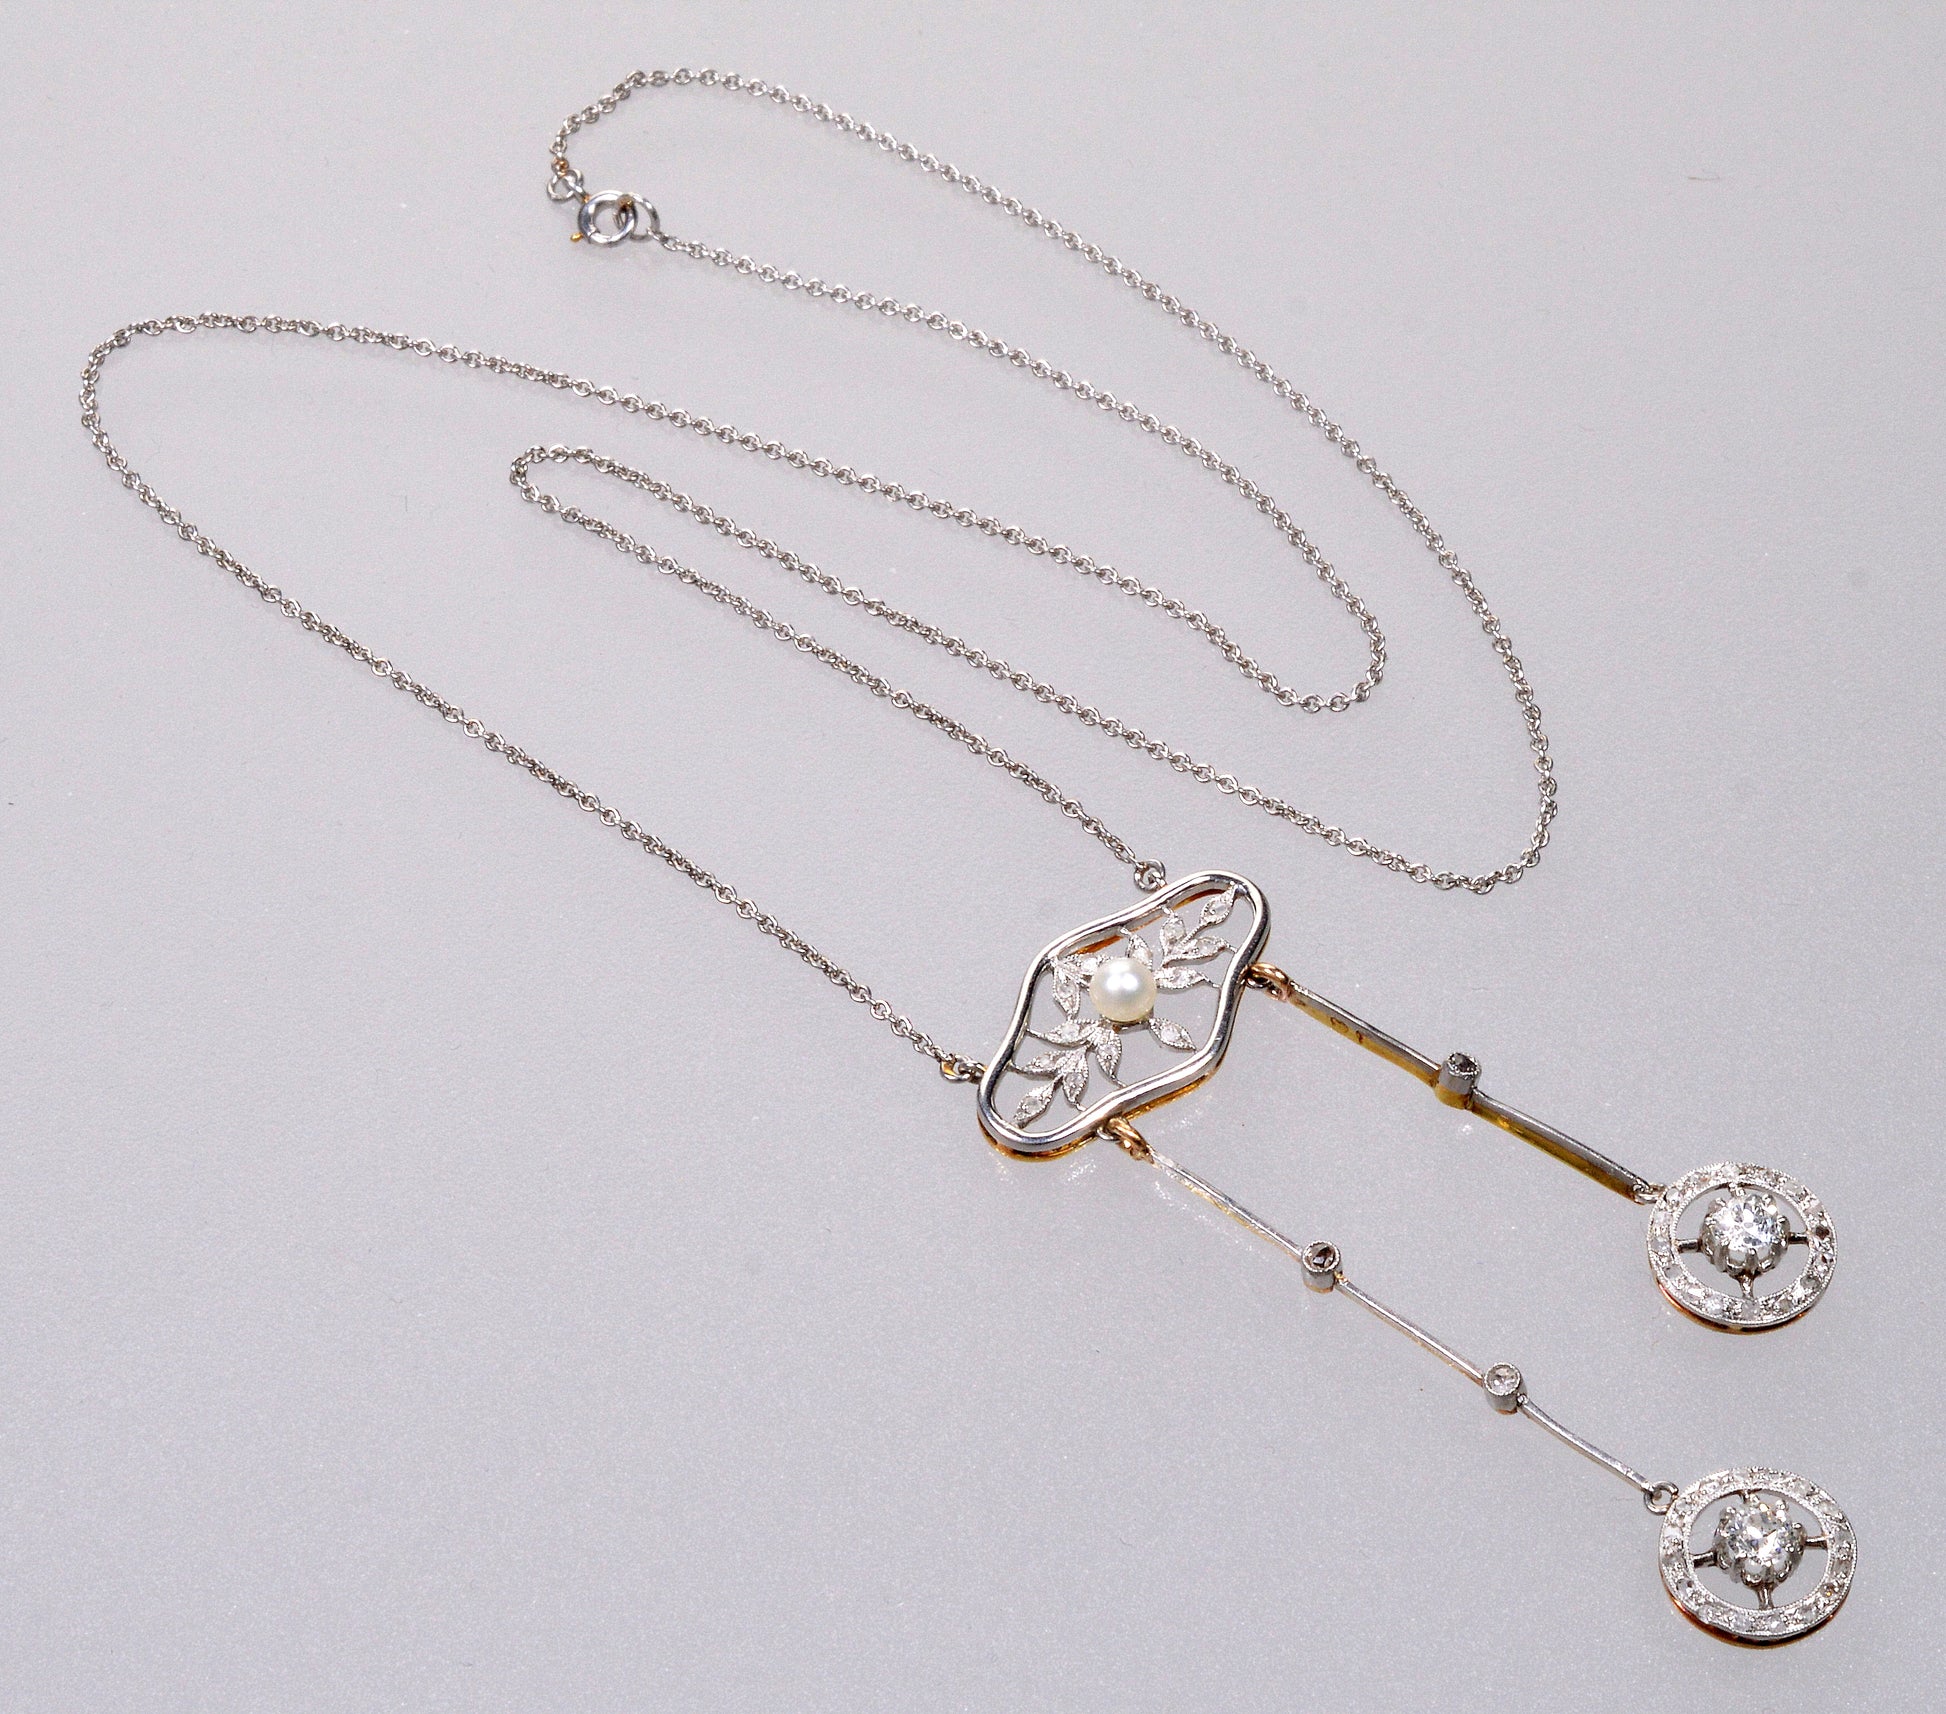 Antique French Belle Époque Negligee Necklace Platinum 14K Gold Old Mine Cut Diamonds C.1900